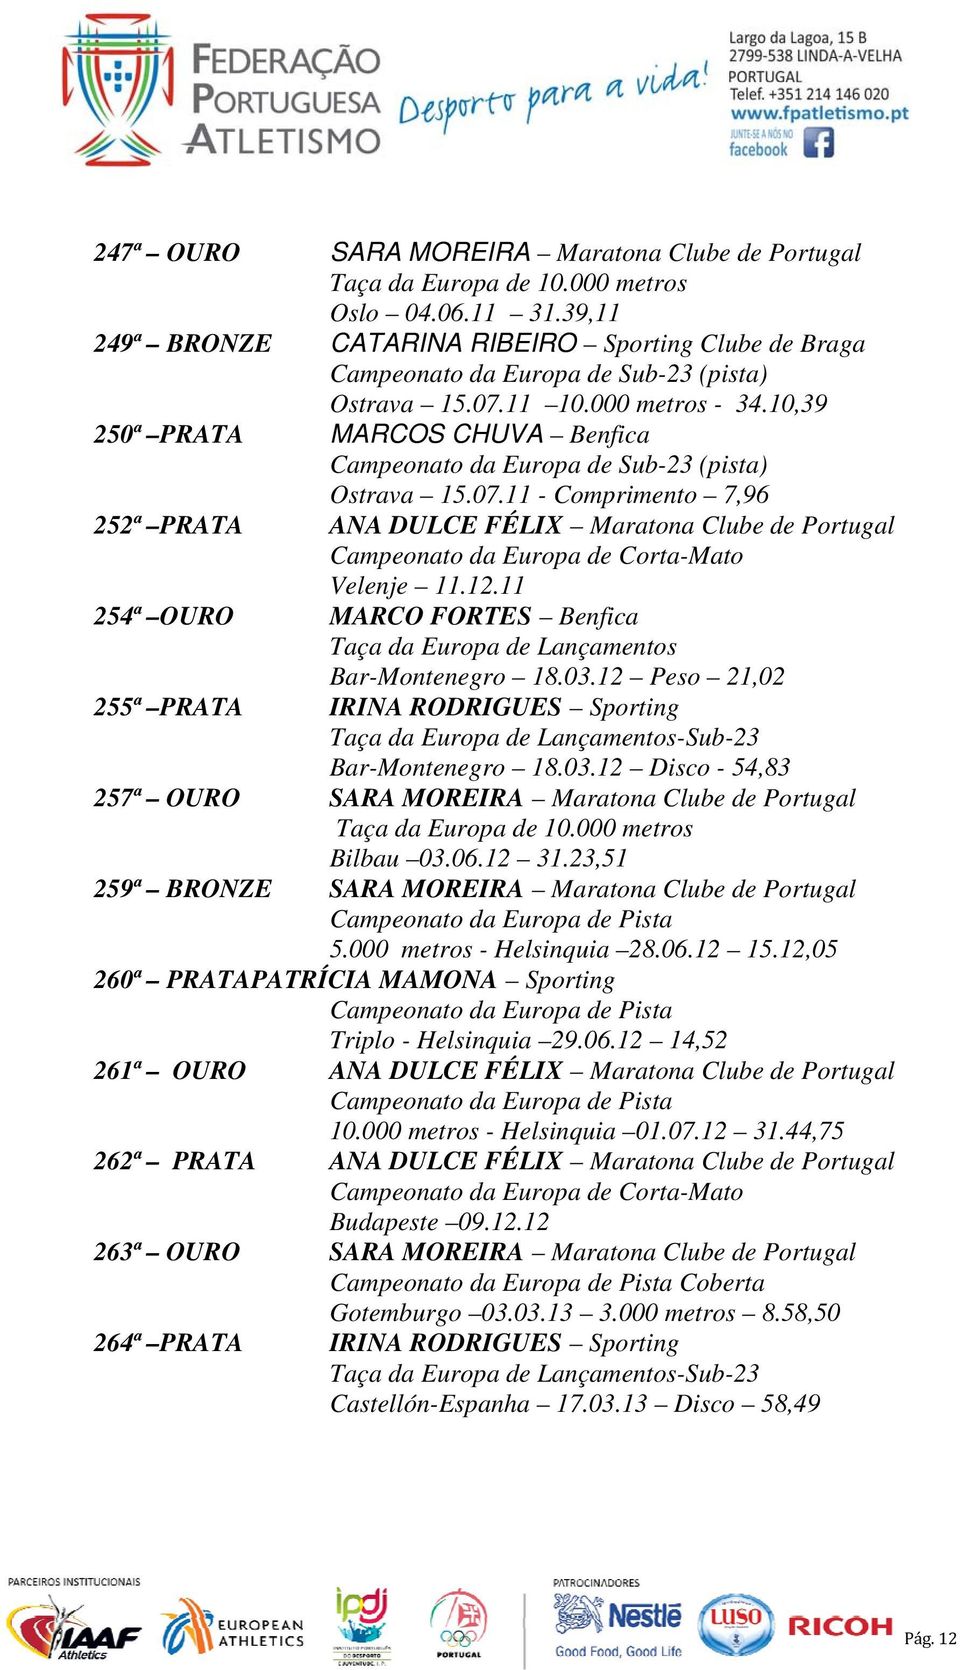 11 - Comprimento 7,96 252ª ANA DULCE FÉLIX Maratona Clube de Portugal Campeonato da Europa de Corta-Mato Velenje 11.12.11 254ª MARCO FORTES Benfica Taça da Europa de Lançamentos Bar-Montenegro 18.03.